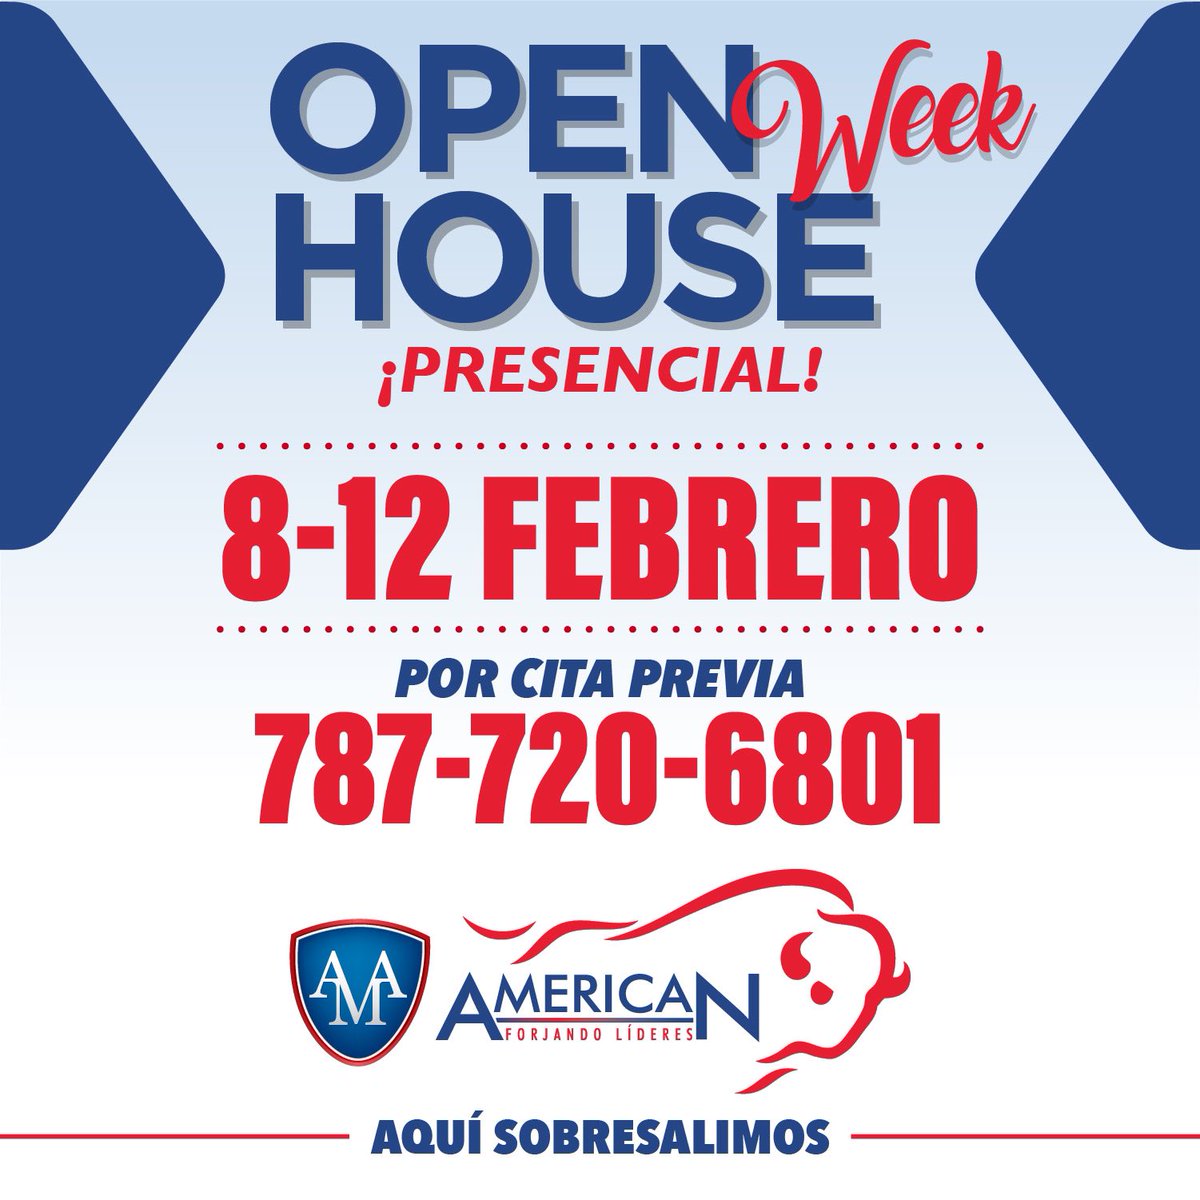 #OpenHouse #Homeofthebison #AMAPR #American #Sobresalimos #Estamoslistos #Bison #Beabison #PuertoRico #Education #School